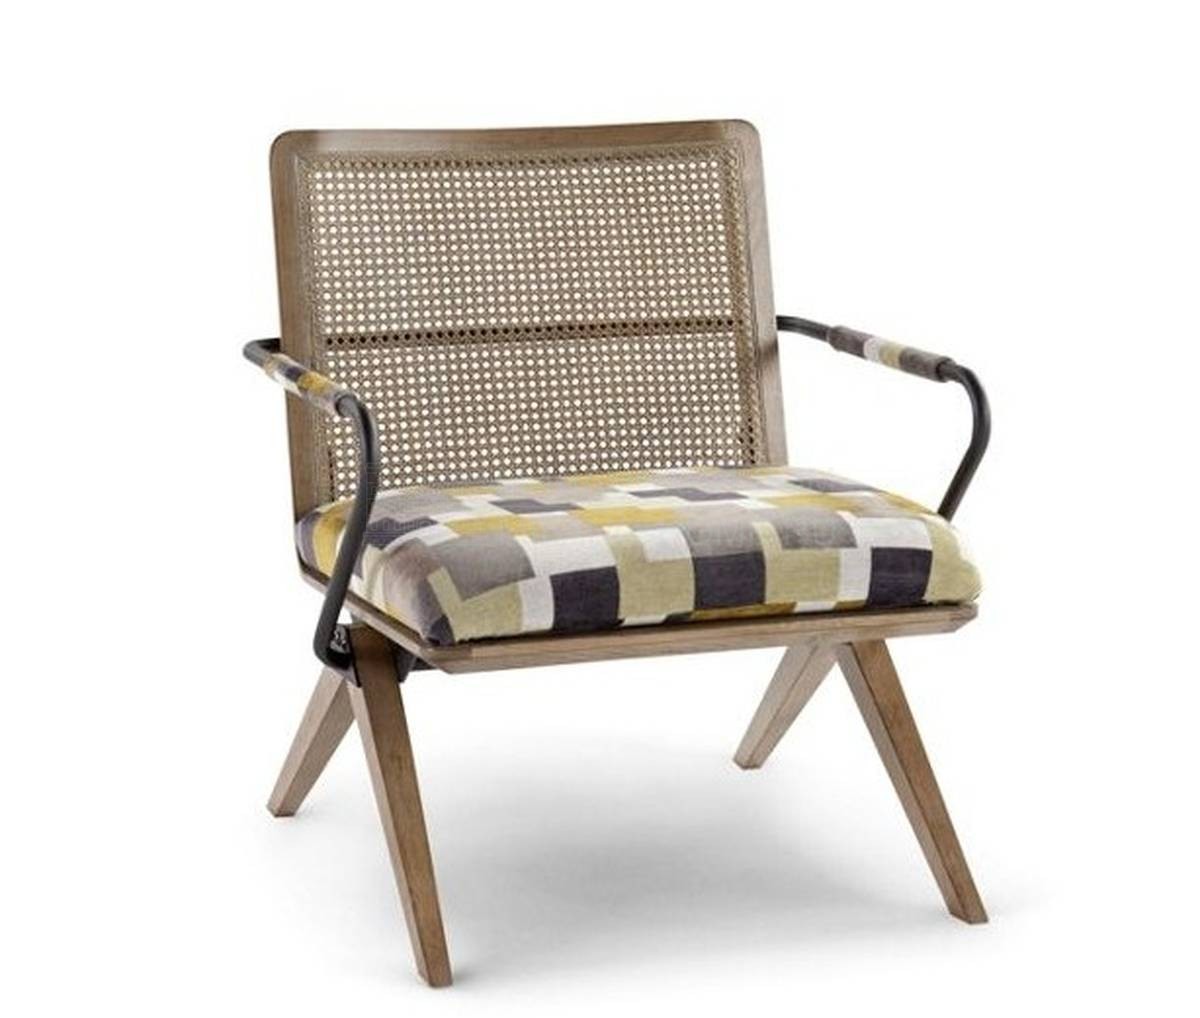 Кресло Armond armchair из Франции фабрики ROCHE BOBOIS